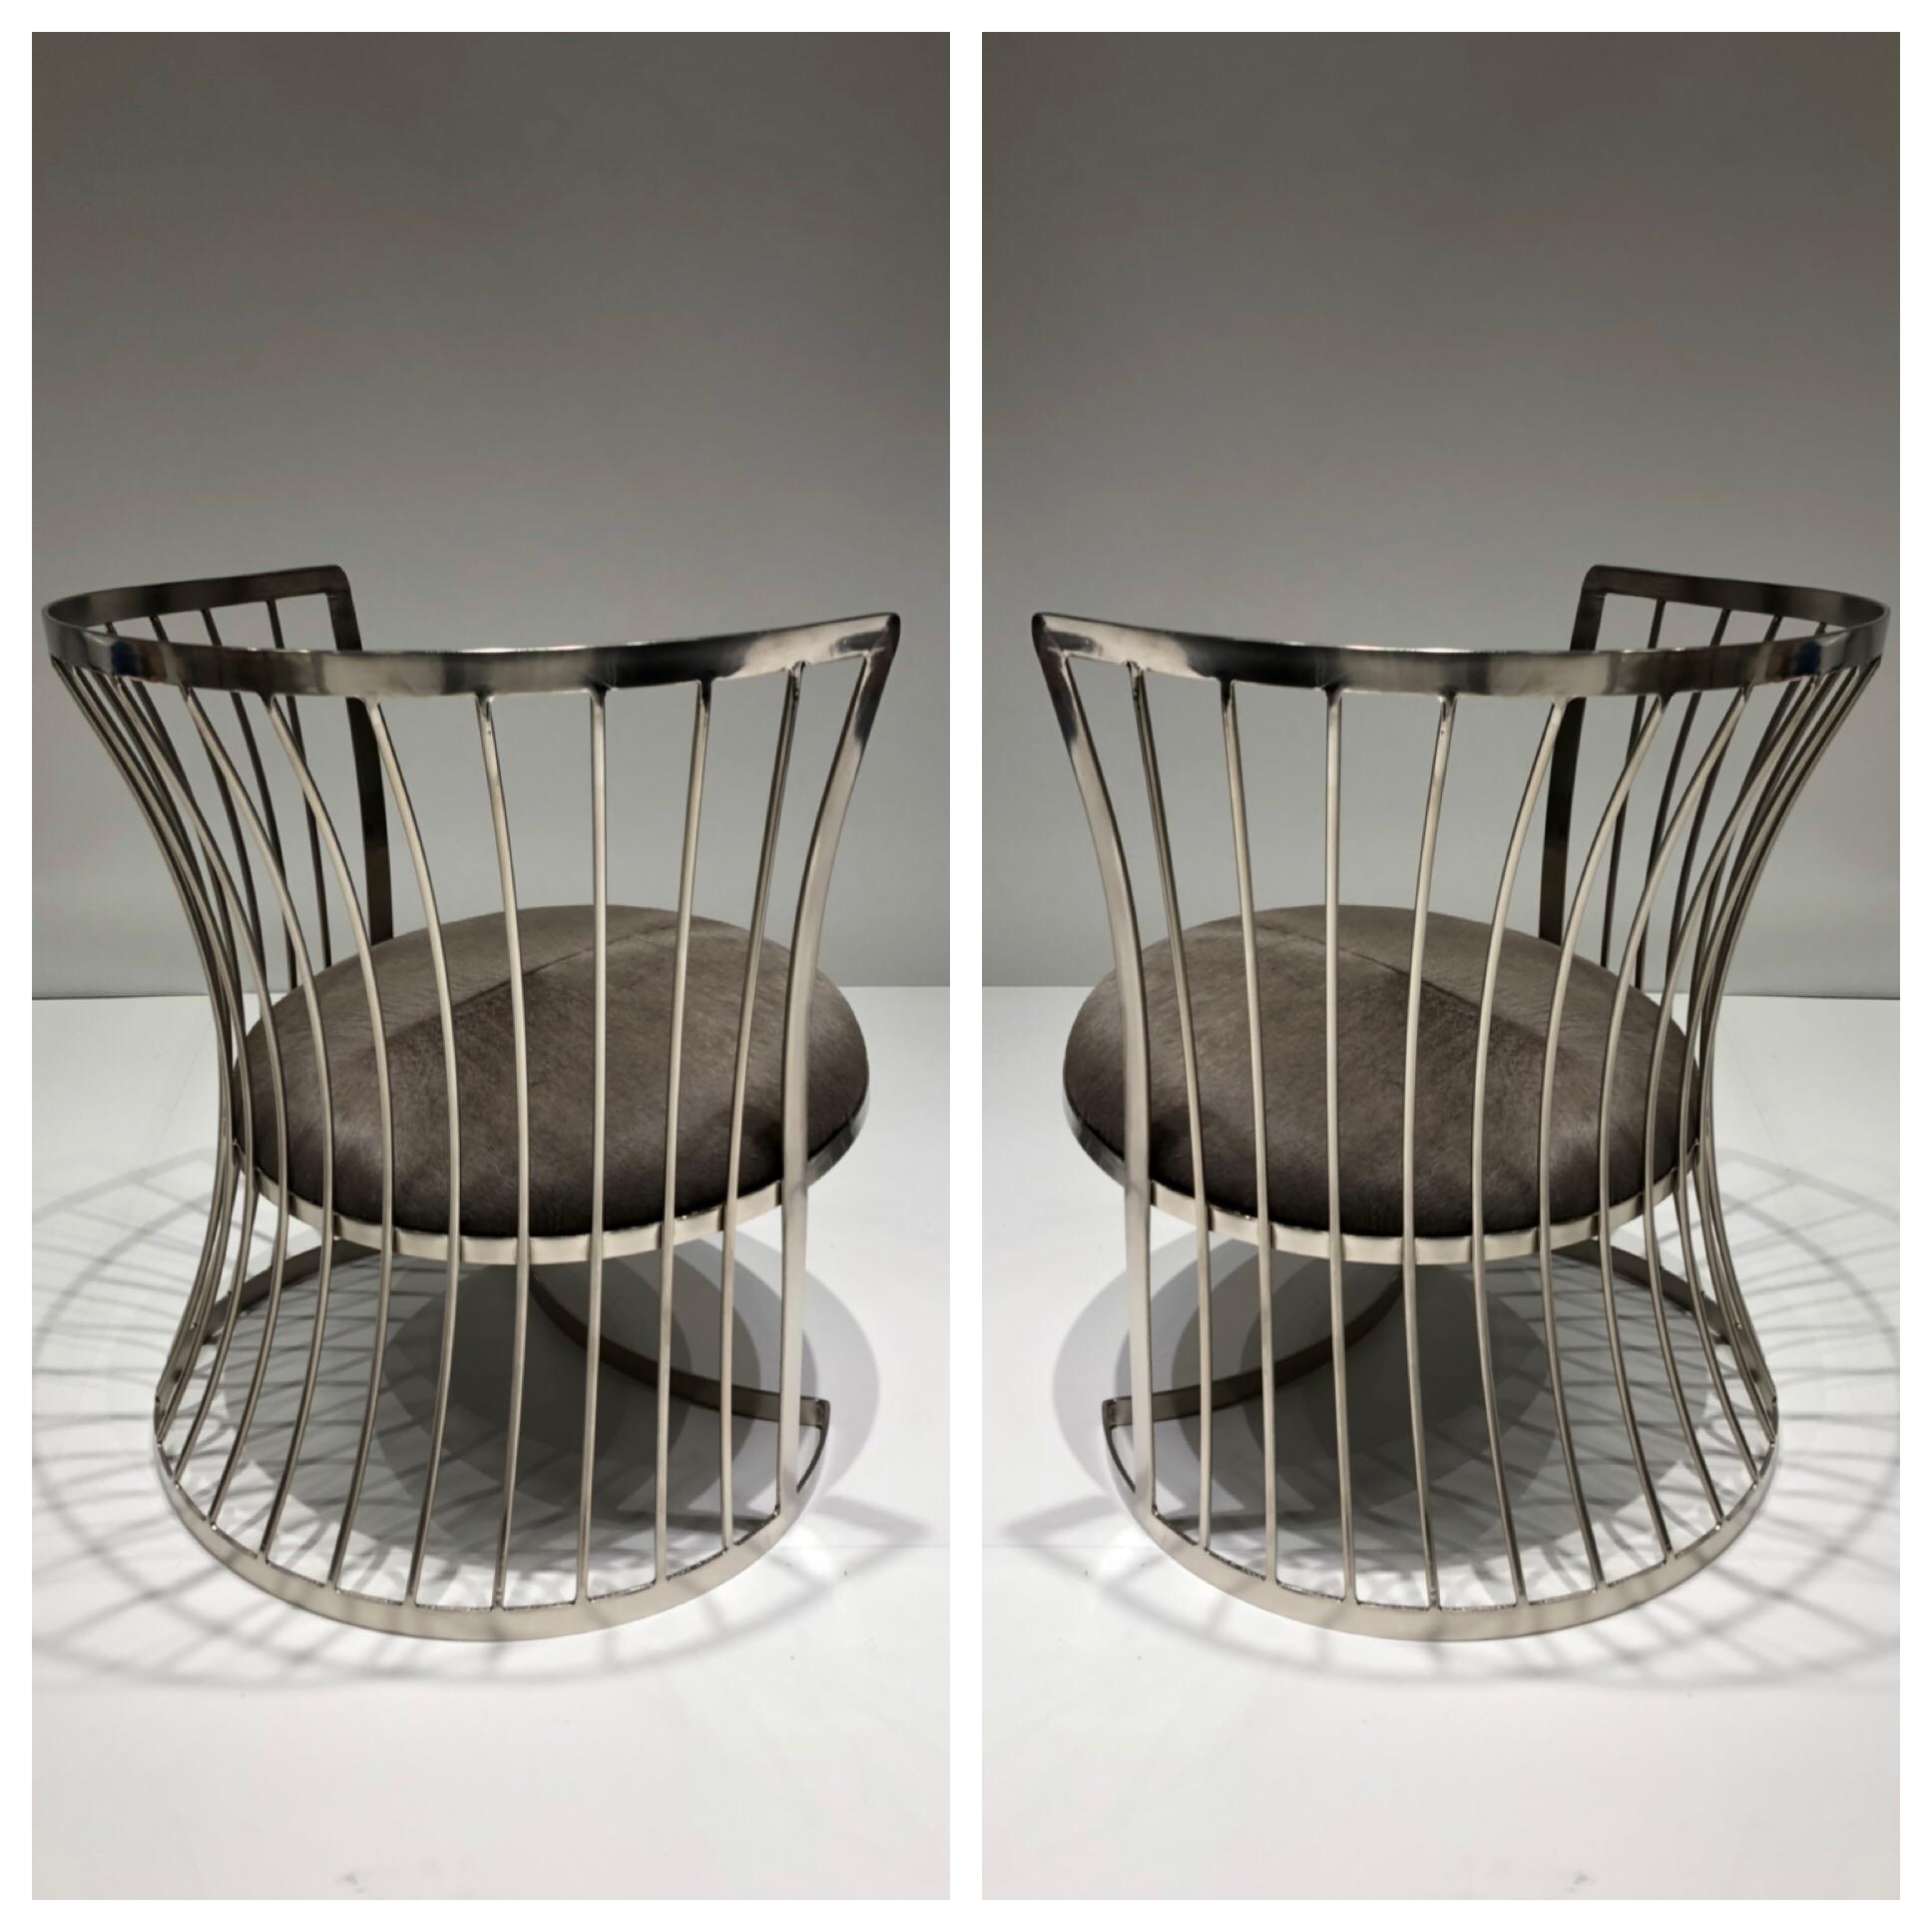 Ein glamouröses Paar Loungesessel aus satiniertem Nickel, entworfen in den 1960er Jahren von Russell Woodard. Die Stühle wurden neu bezogen und die Sitze mit einem grauen Rindsleder überzogen.
Abmessungen: 26.5